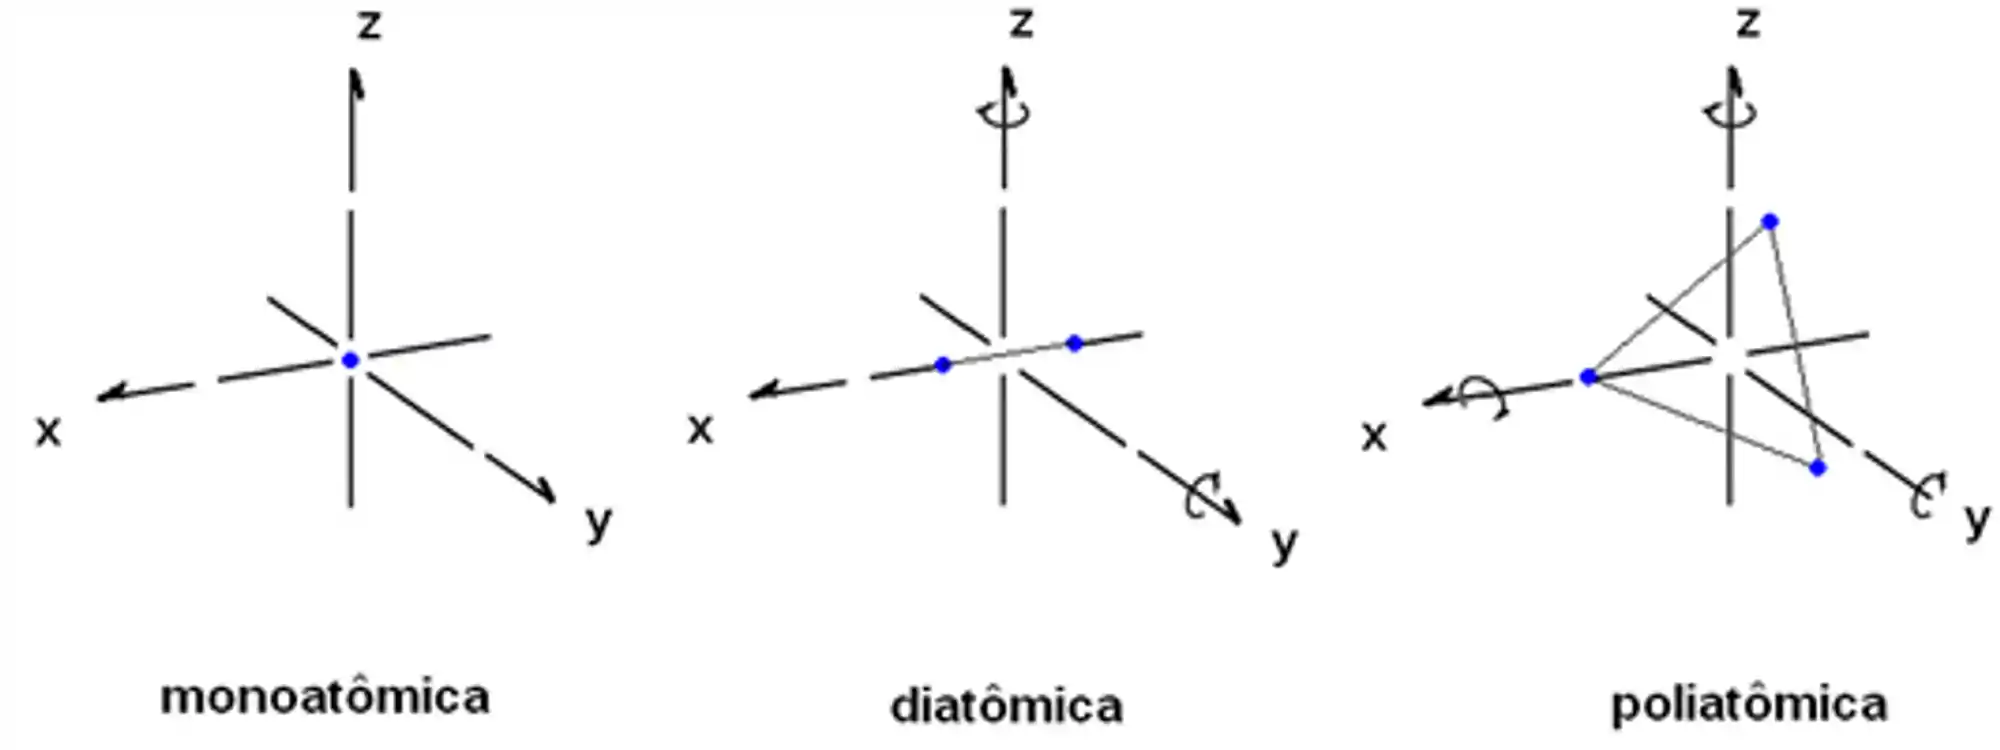 Graus de liberdade de moléculas monoatômicas, diatômicas e poliatômicas.